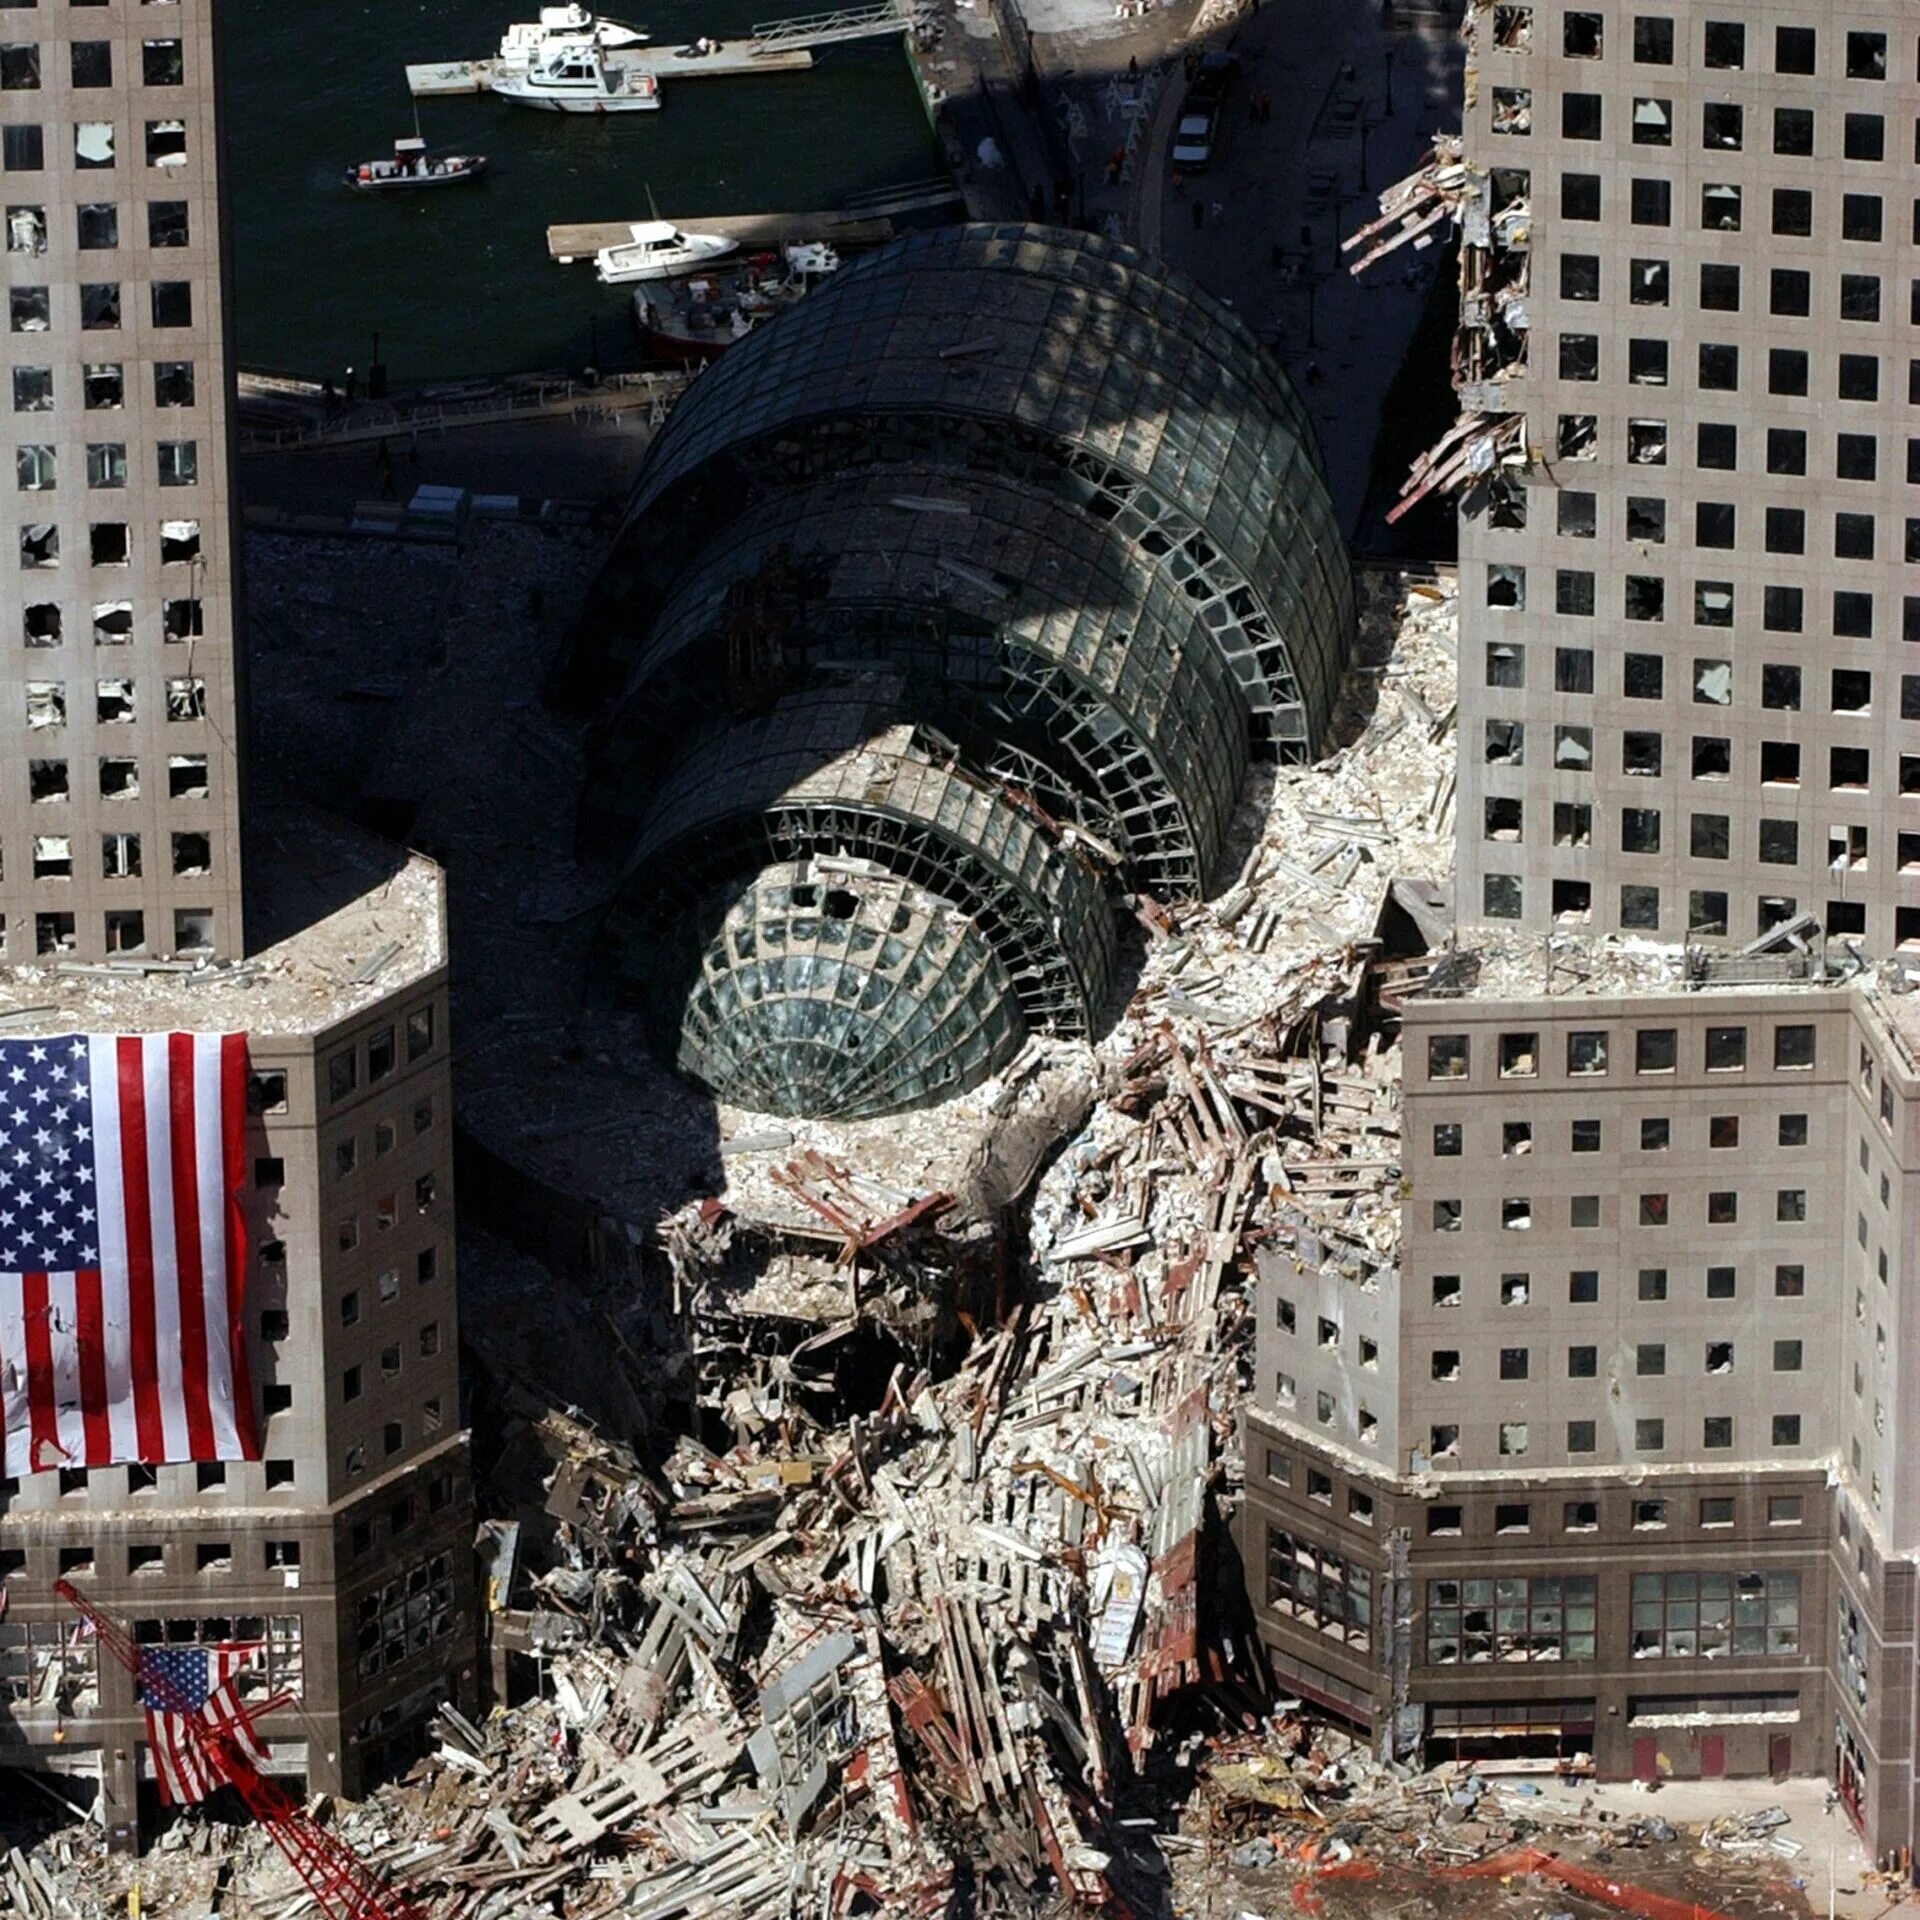 Небоскребы 2001. ВТЦ Нью-Йорк 2001. Всемирный торговый центр в Нью-Йорке 11 сентября. Башни-Близнецы теракт 11 сентября 2001. Теракт 11 сентября 2001 Пентагон.